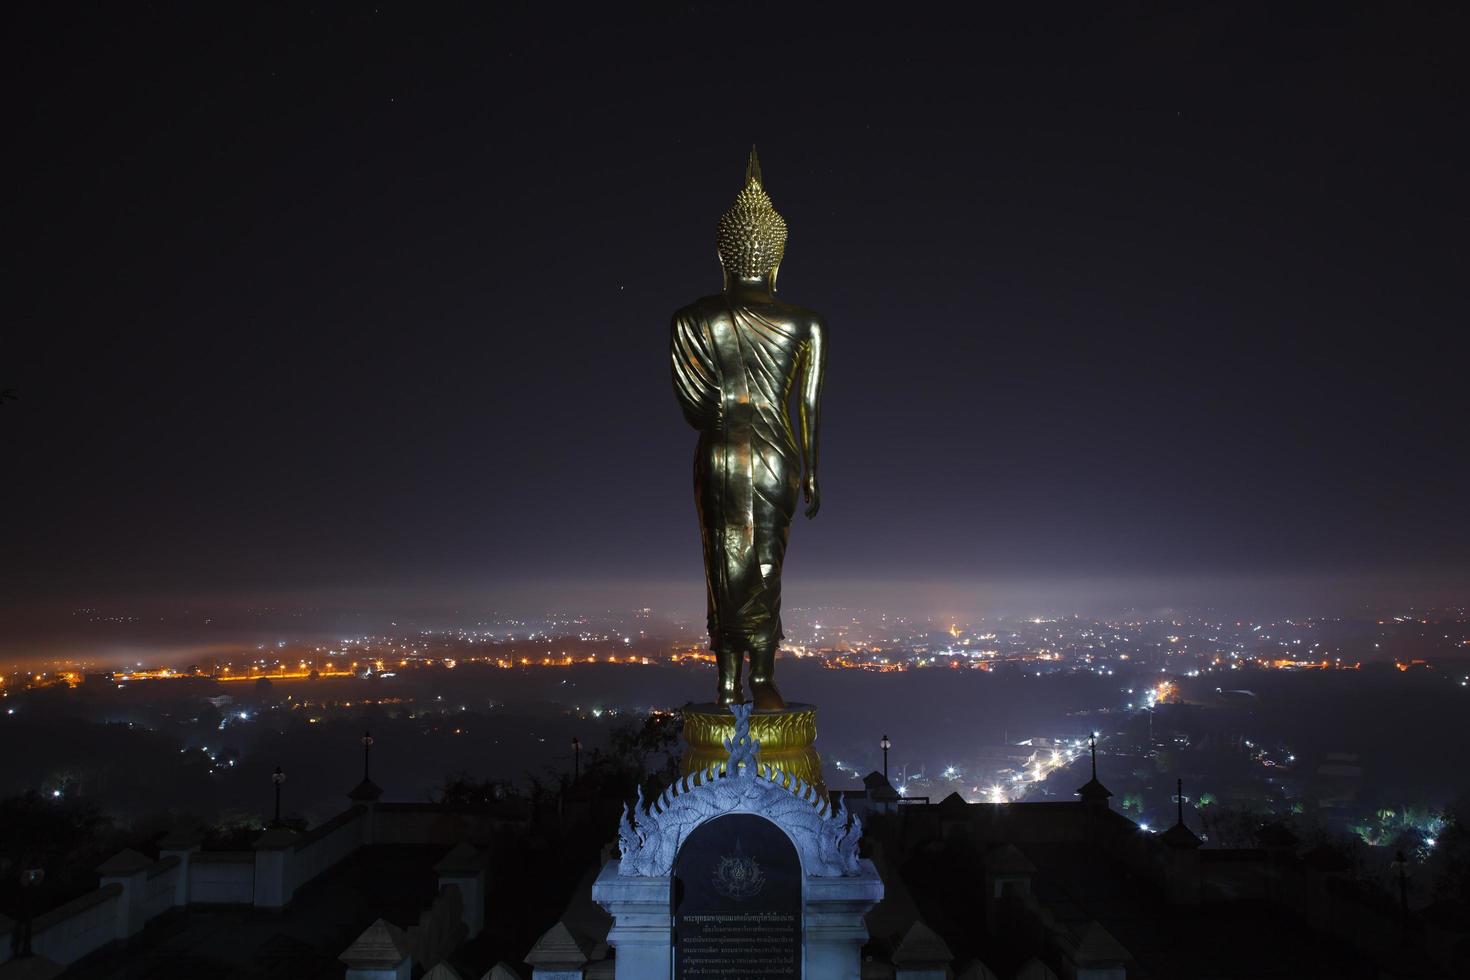 Budda statua in piedi nel notte a wat Phra quello khao Noi nel nan, Tailandia foto